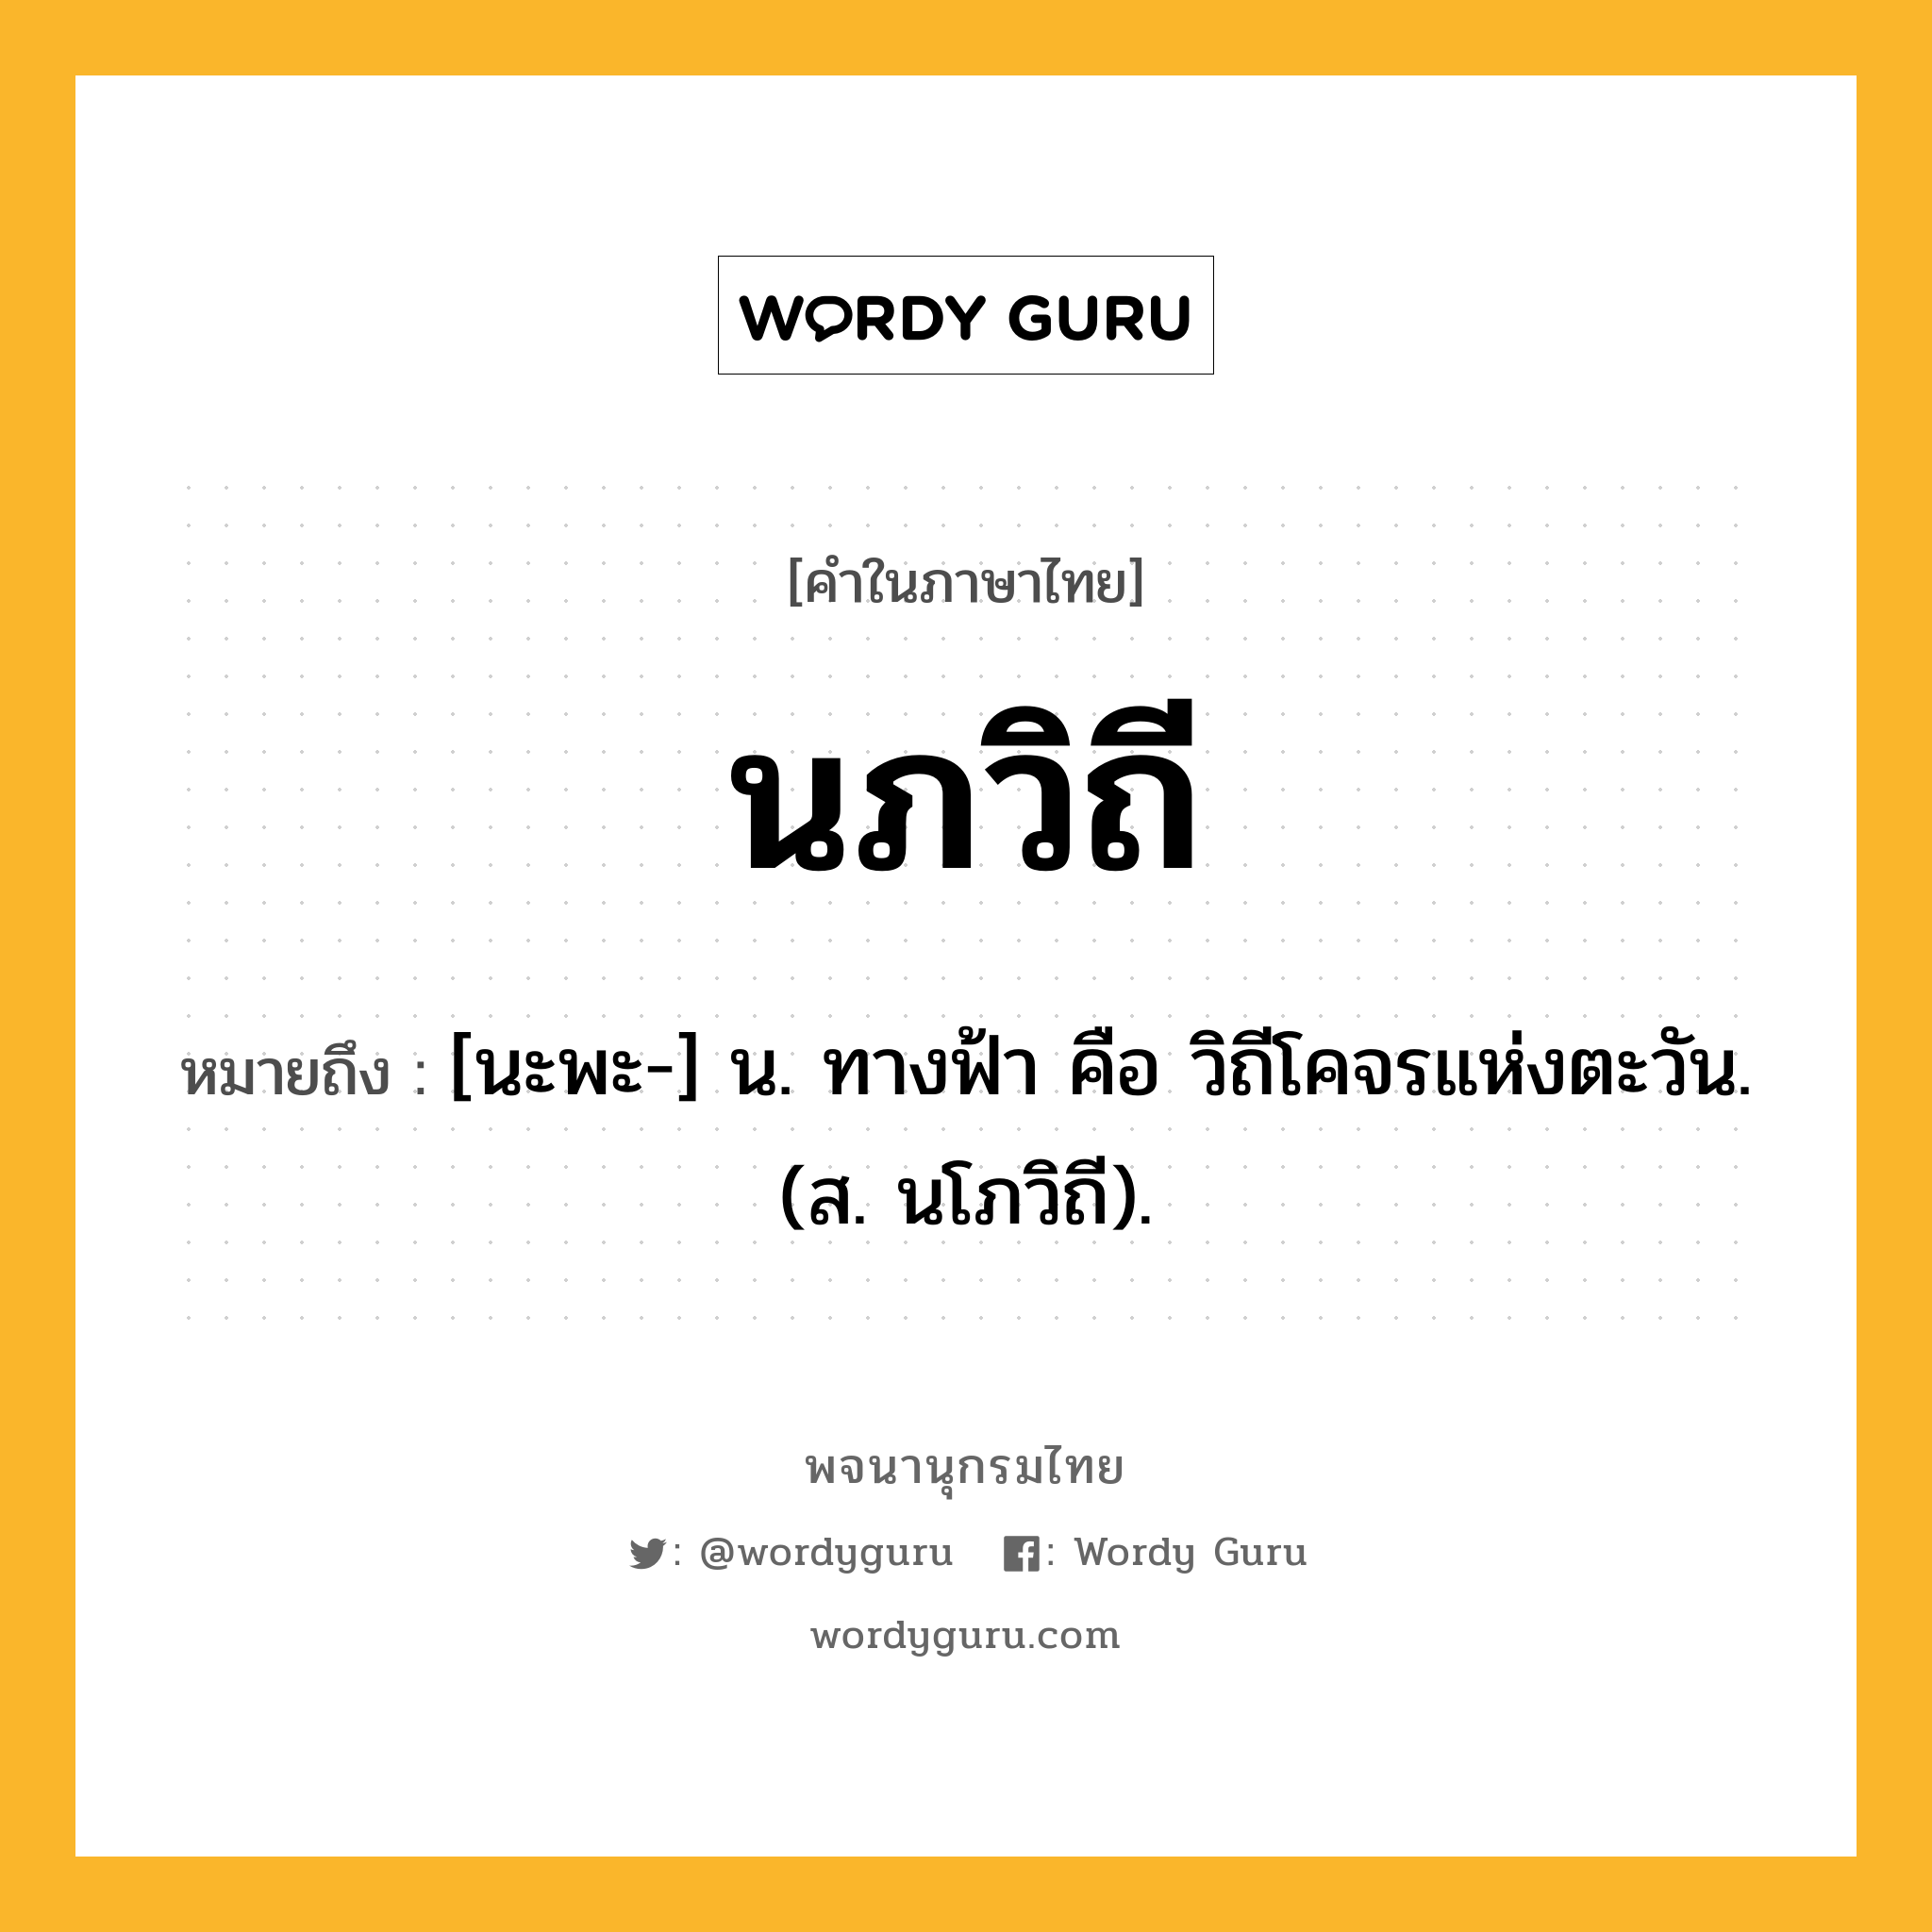 นภวิถี ความหมาย หมายถึงอะไร?, คำในภาษาไทย นภวิถี หมายถึง [นะพะ-] น. ทางฟ้า คือ วิถีโคจรแห่งตะวัน. (ส. นโภวิถี).